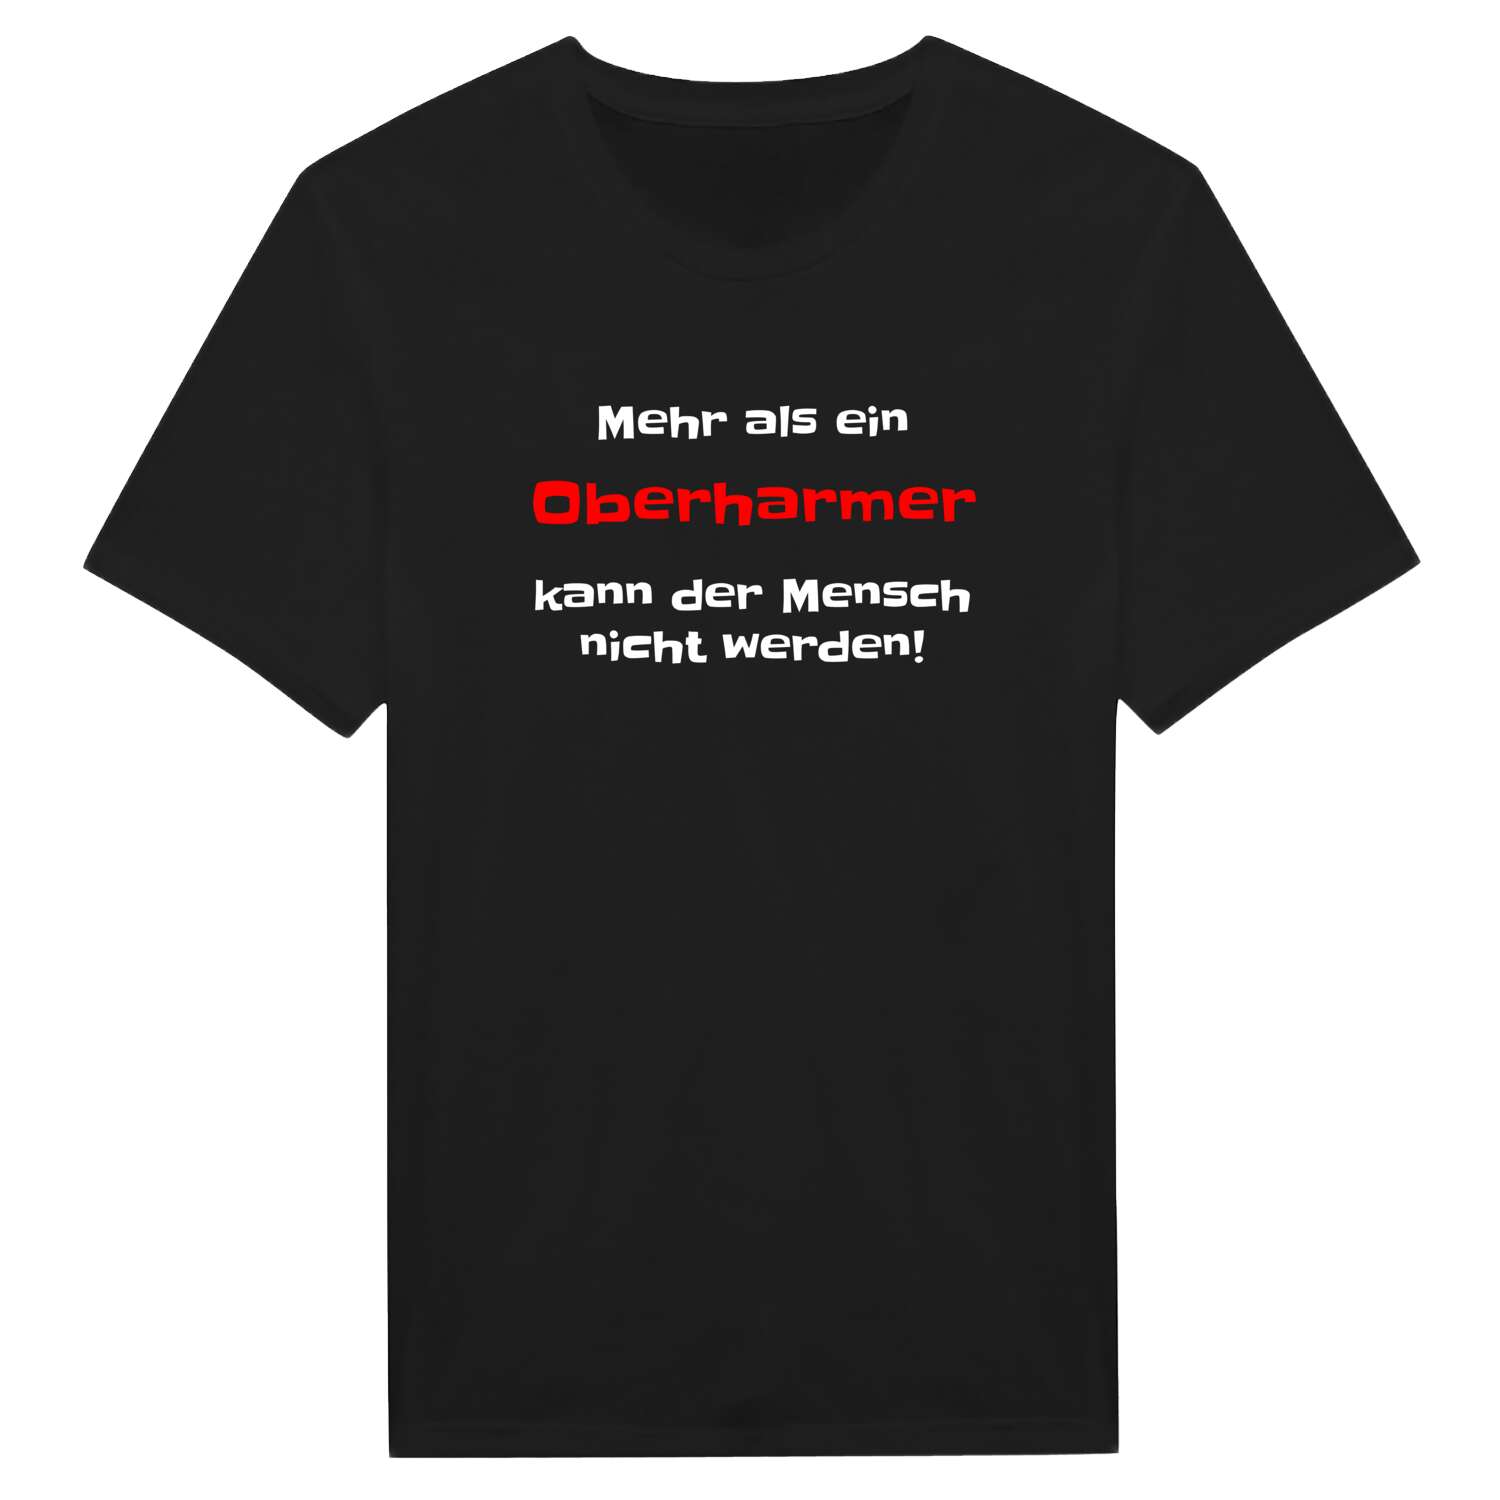 Oberharm T-Shirt »Mehr als ein«